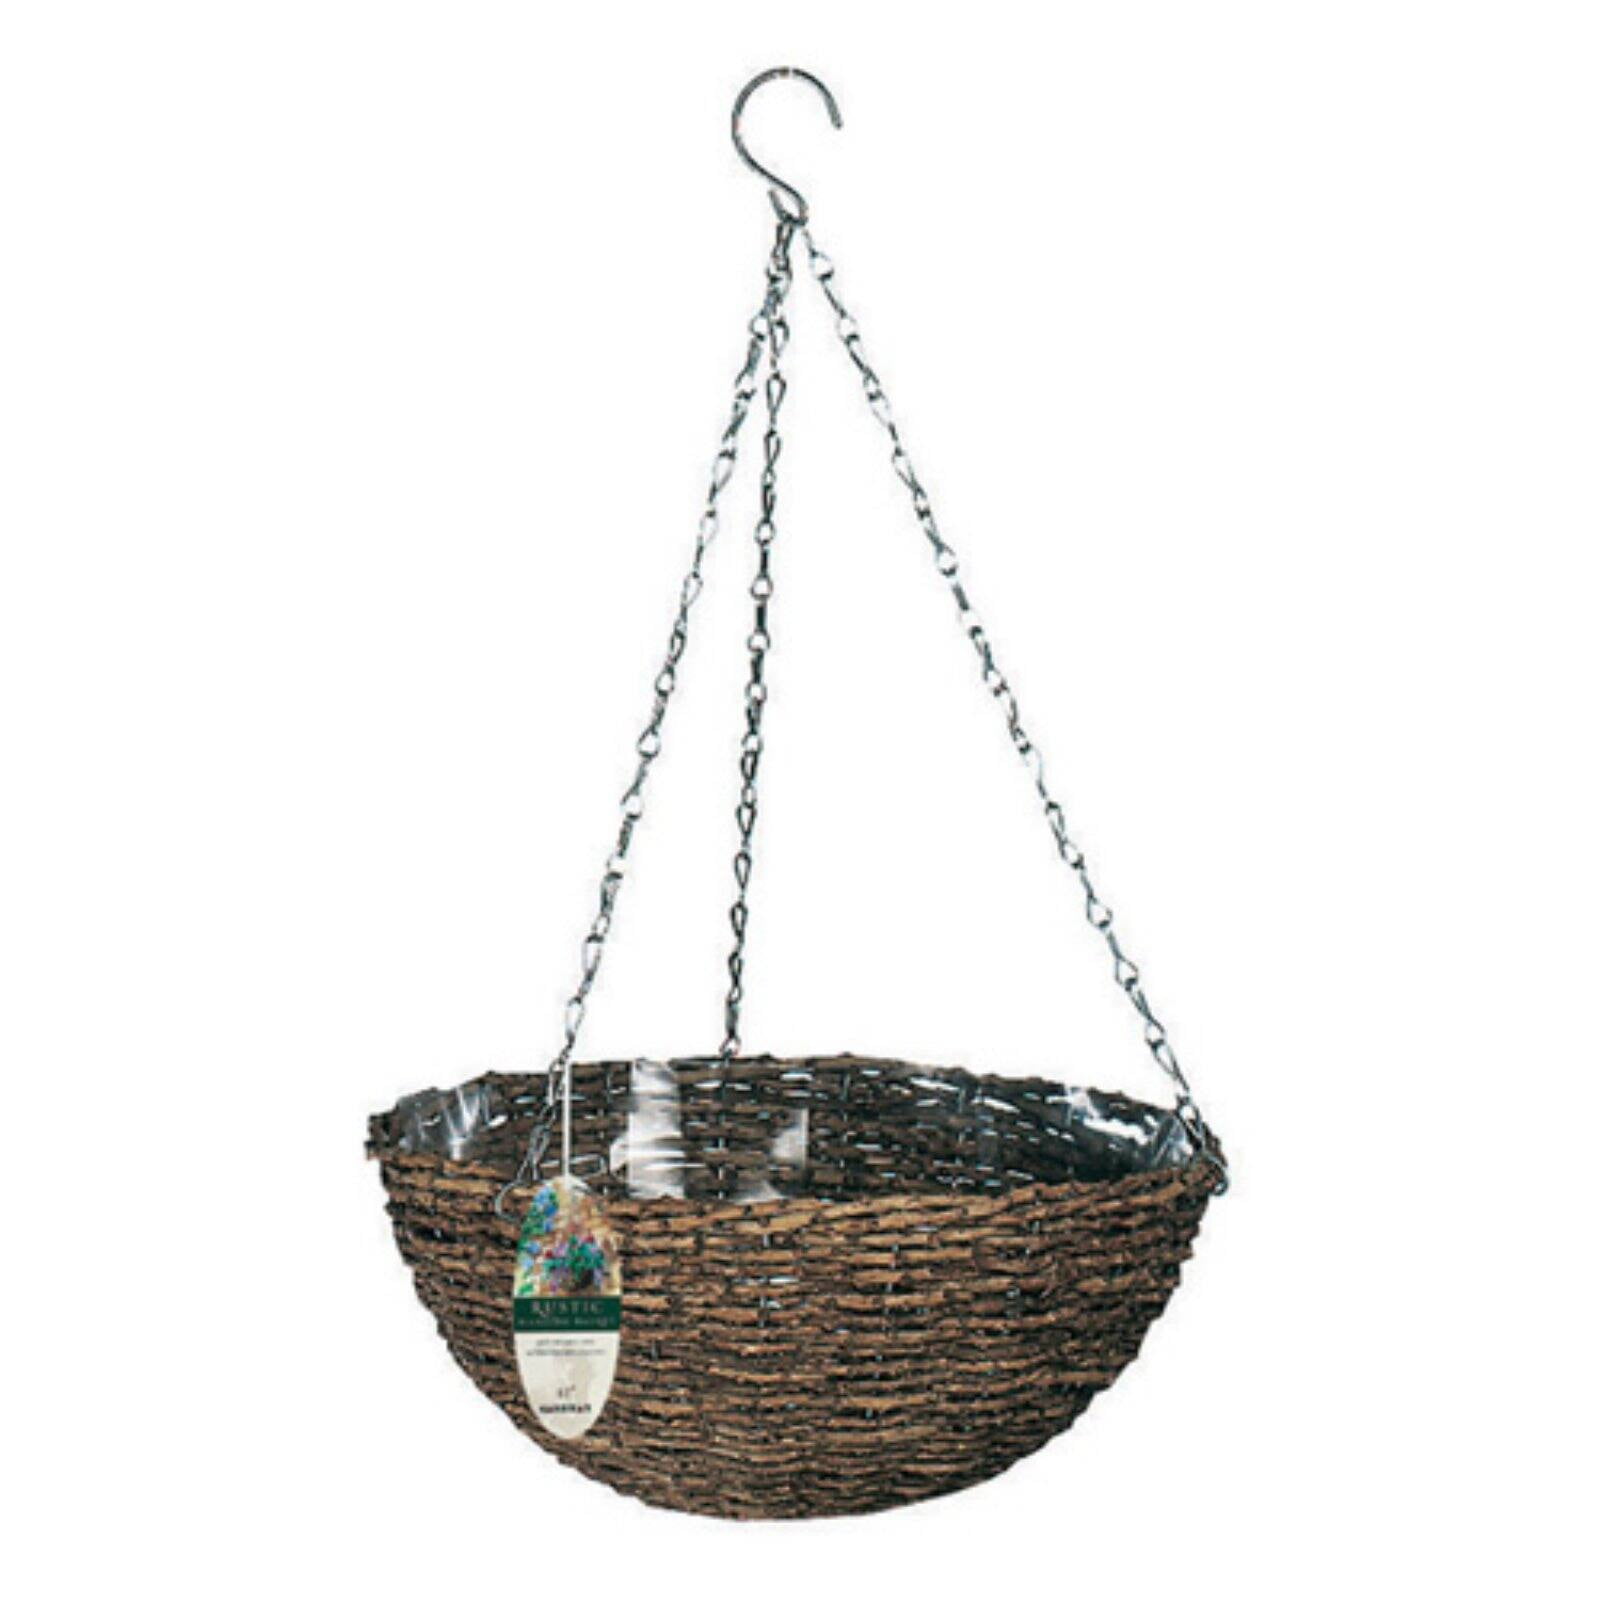 12" Dark Rattan Round Hanging Baskets With Wire Chain Black Wicker Garden Decor